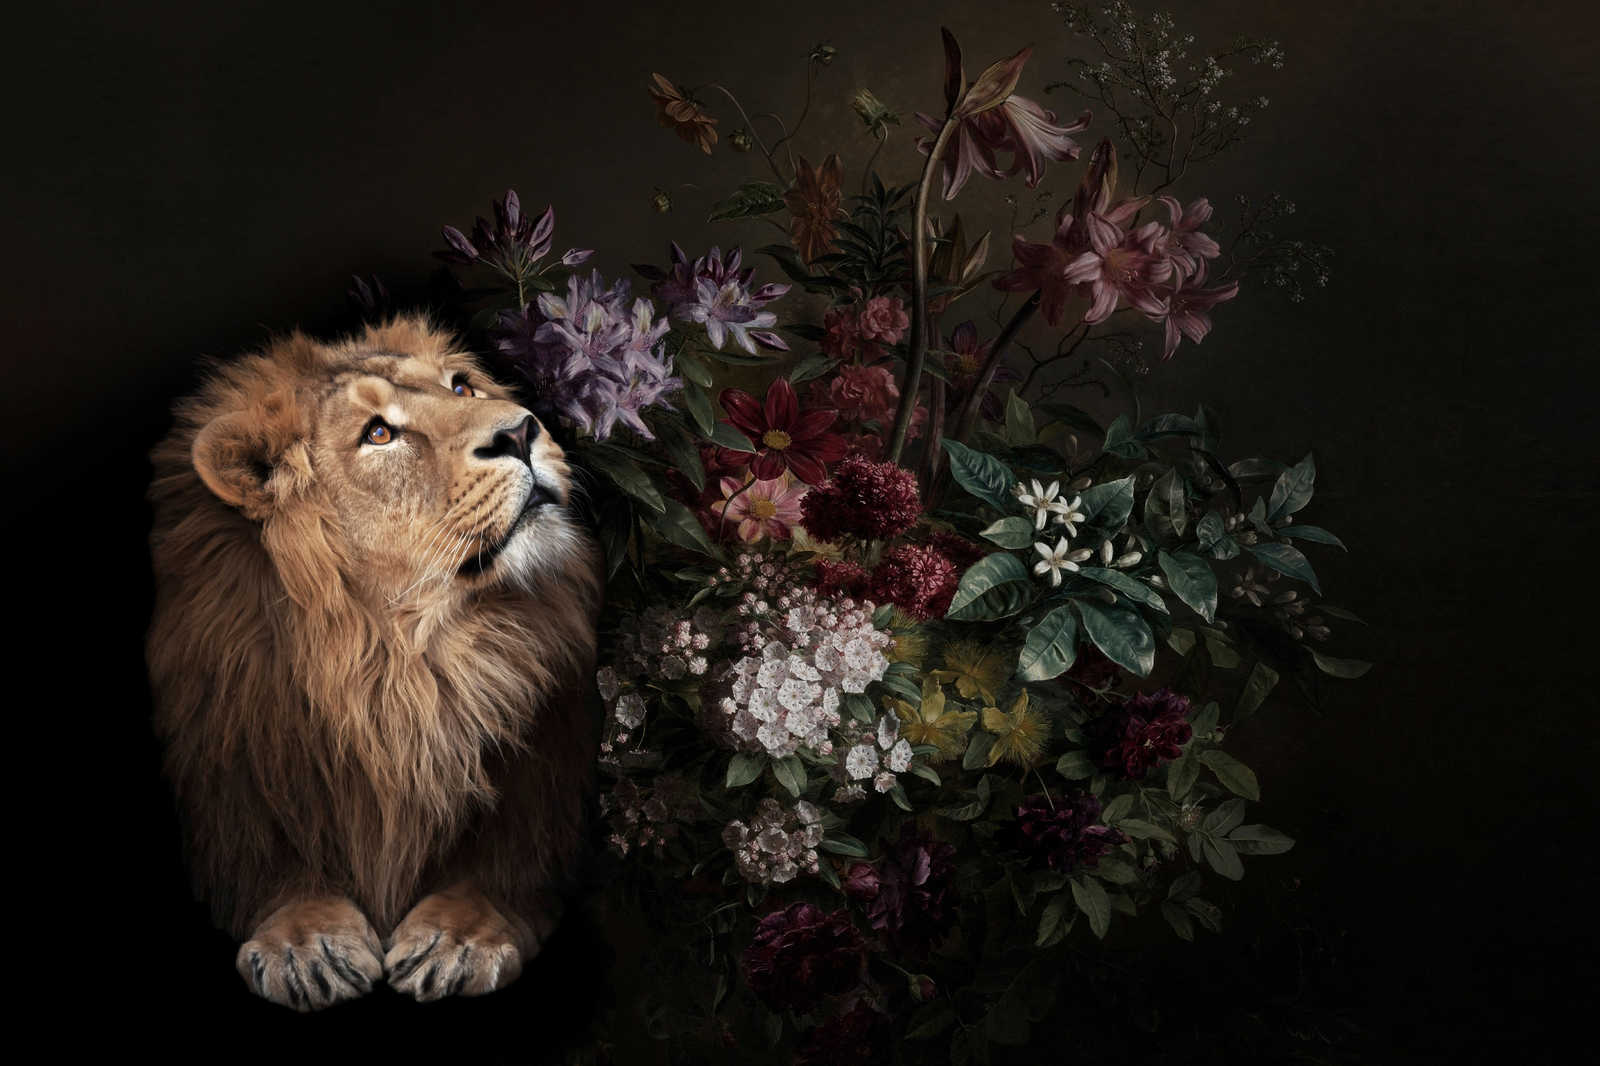             Canvas schilderij Leeuw portret met bloemen - 0,90 m x 0,60 m
        